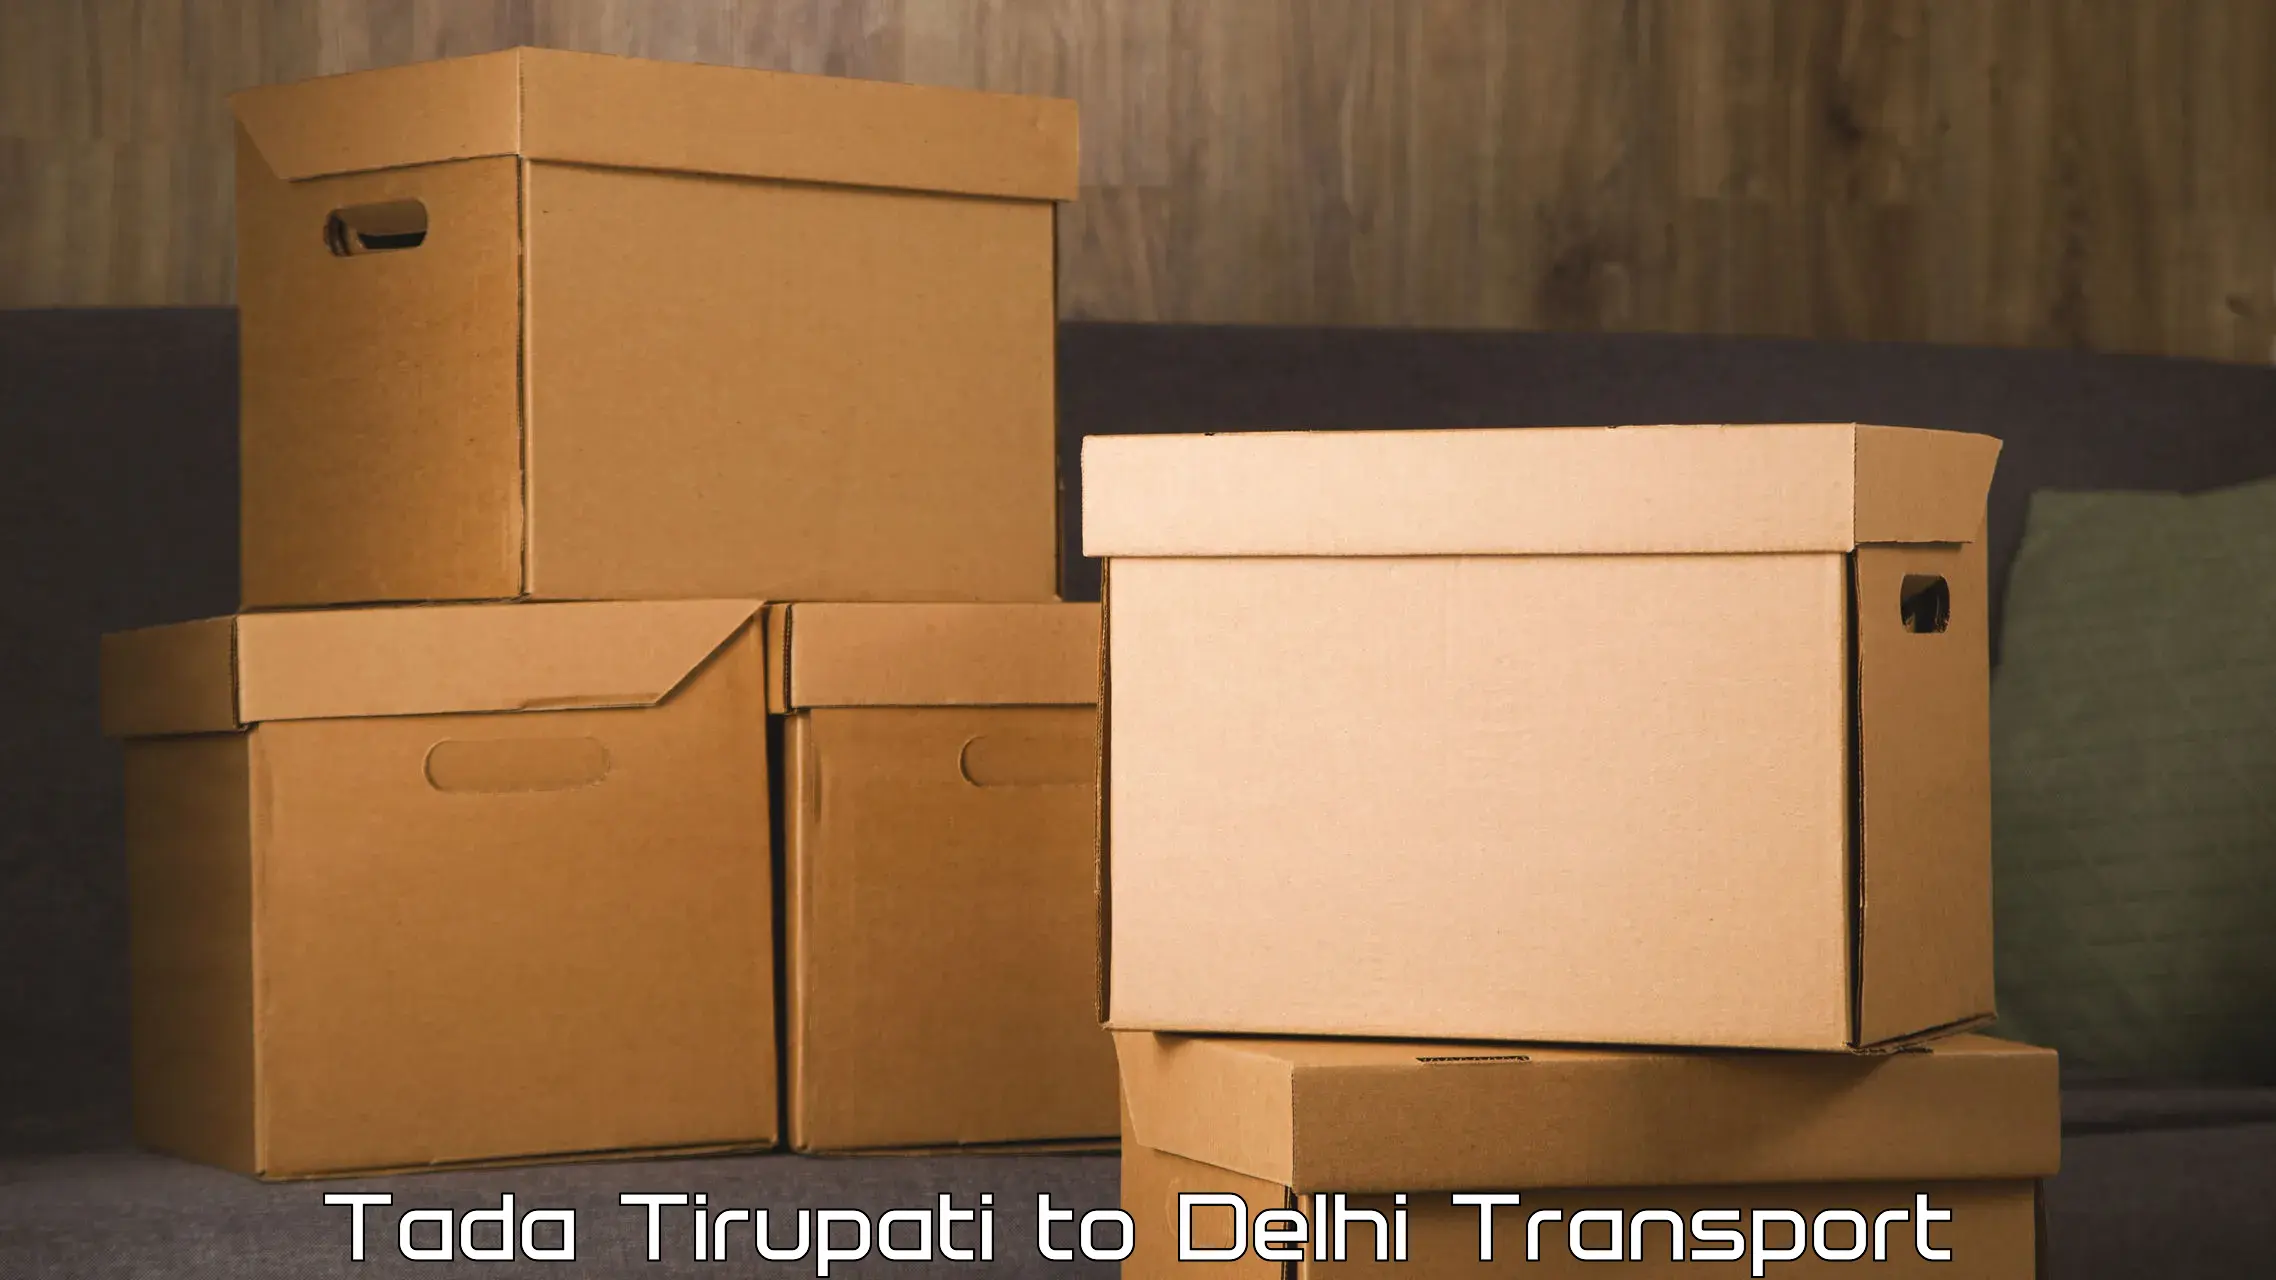 Road transport online services Tada Tirupati to Delhi